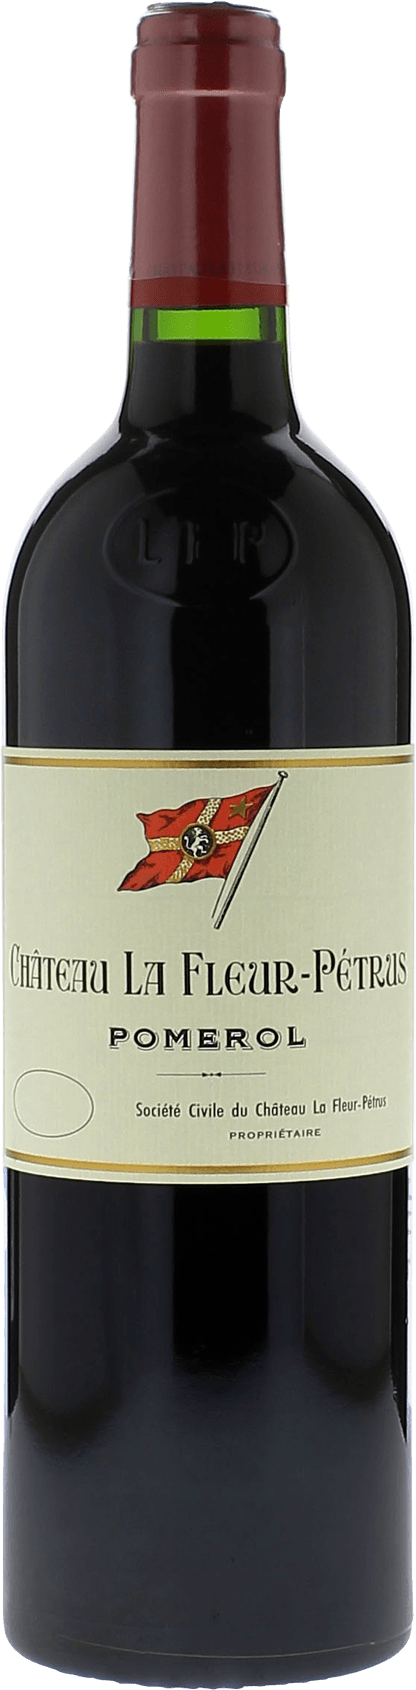 La fleur petrus 2000  Pomerol, Bordeaux rouge